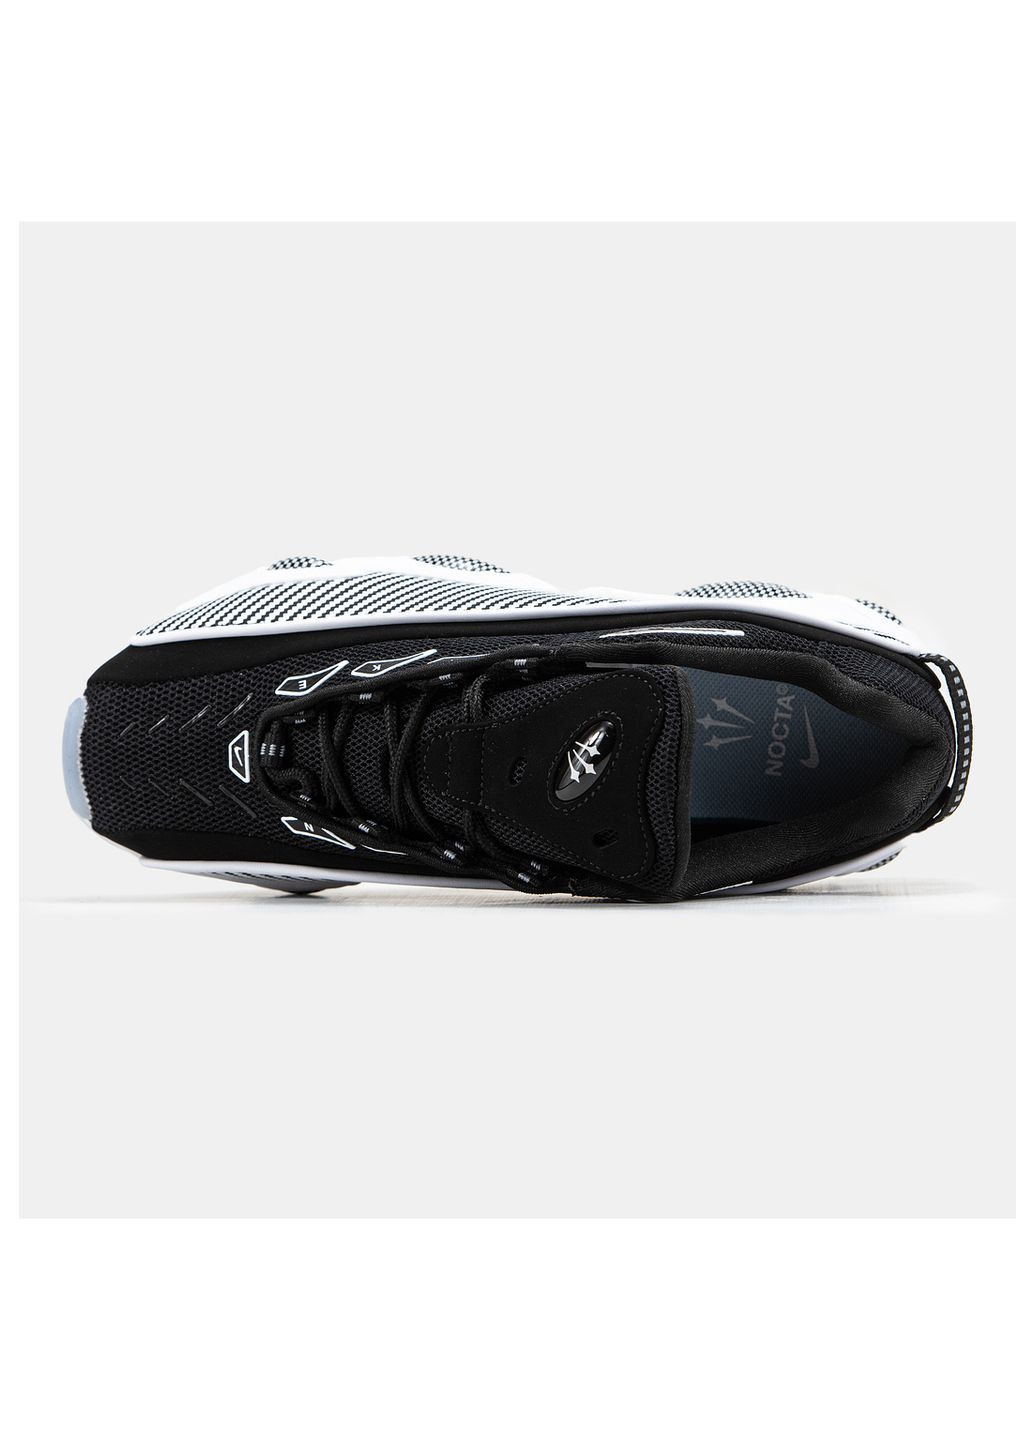 Черно-белые демисезонные кроссовки мужские Nike Nocta Glide